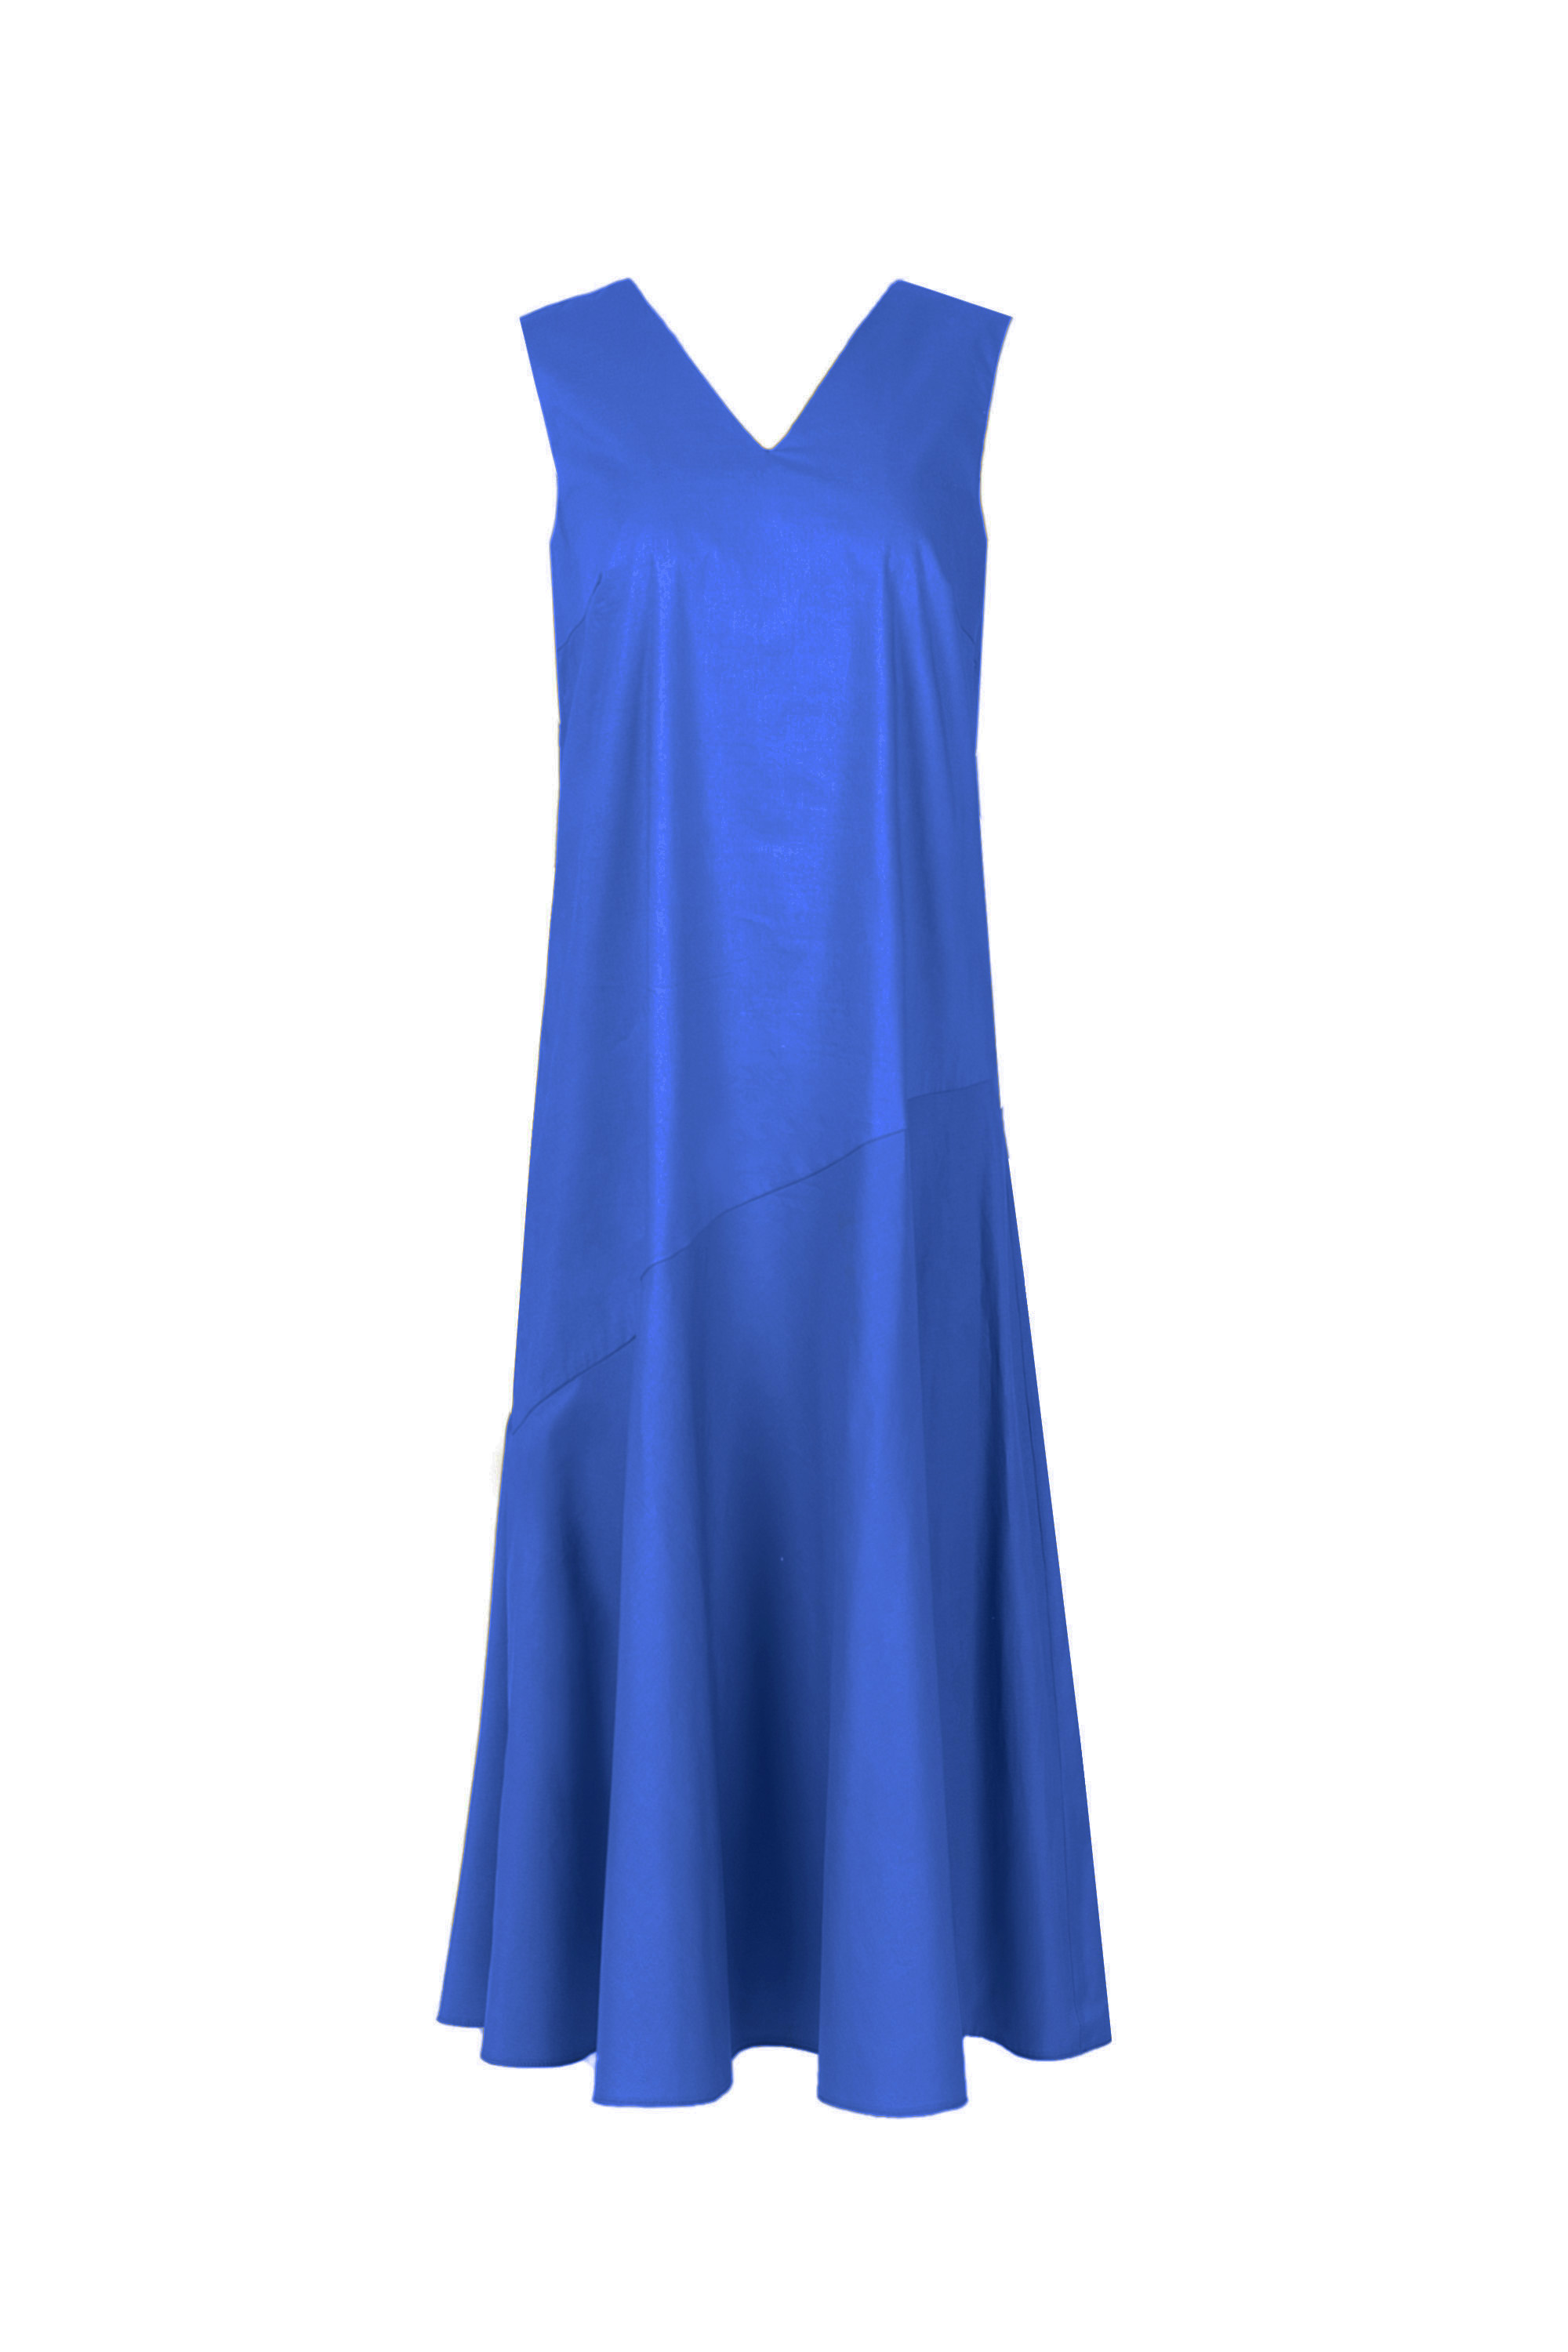 Платье женское 5К-12519-1. Фото 1.